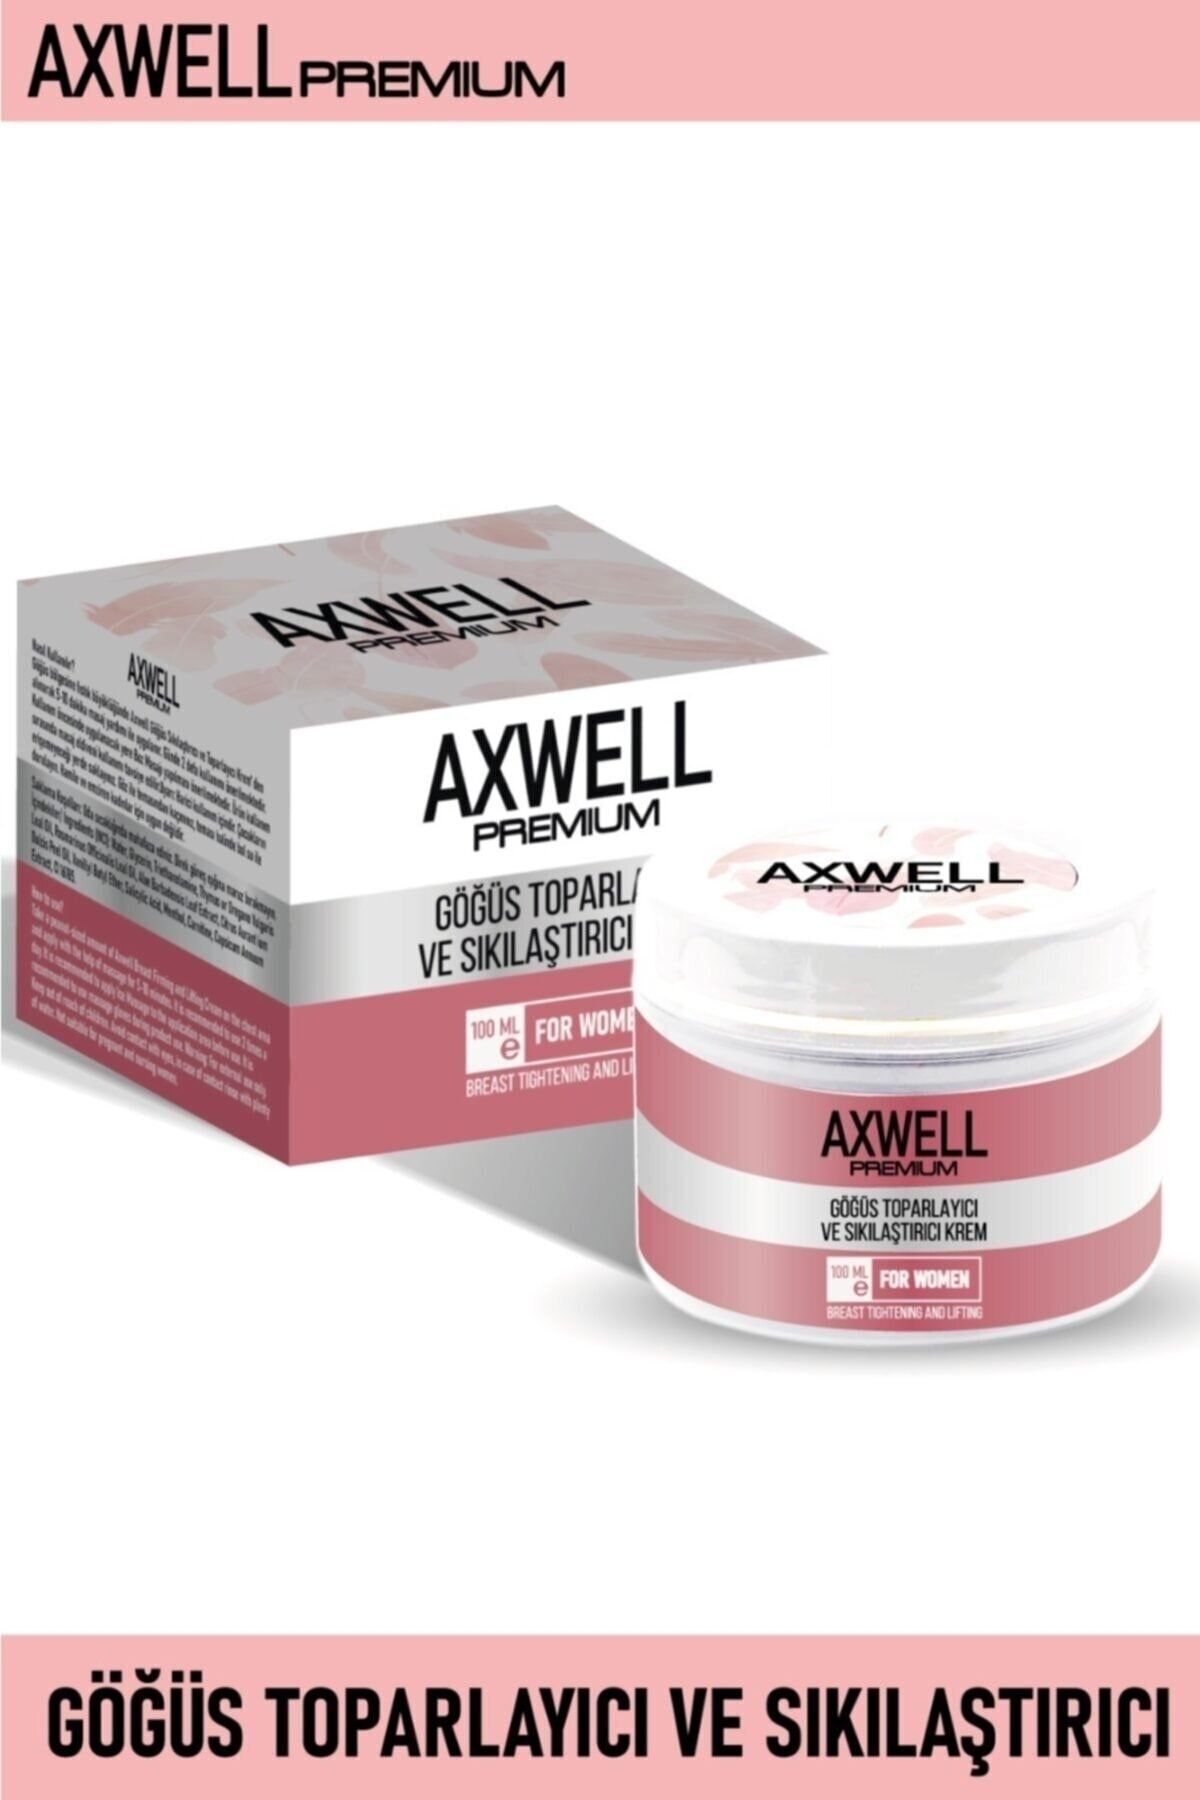 AXWELL Premium Göğüs Sıkılaştırıcı Ve Toparlayıcı Göğüs Bakım Kremi 100ml